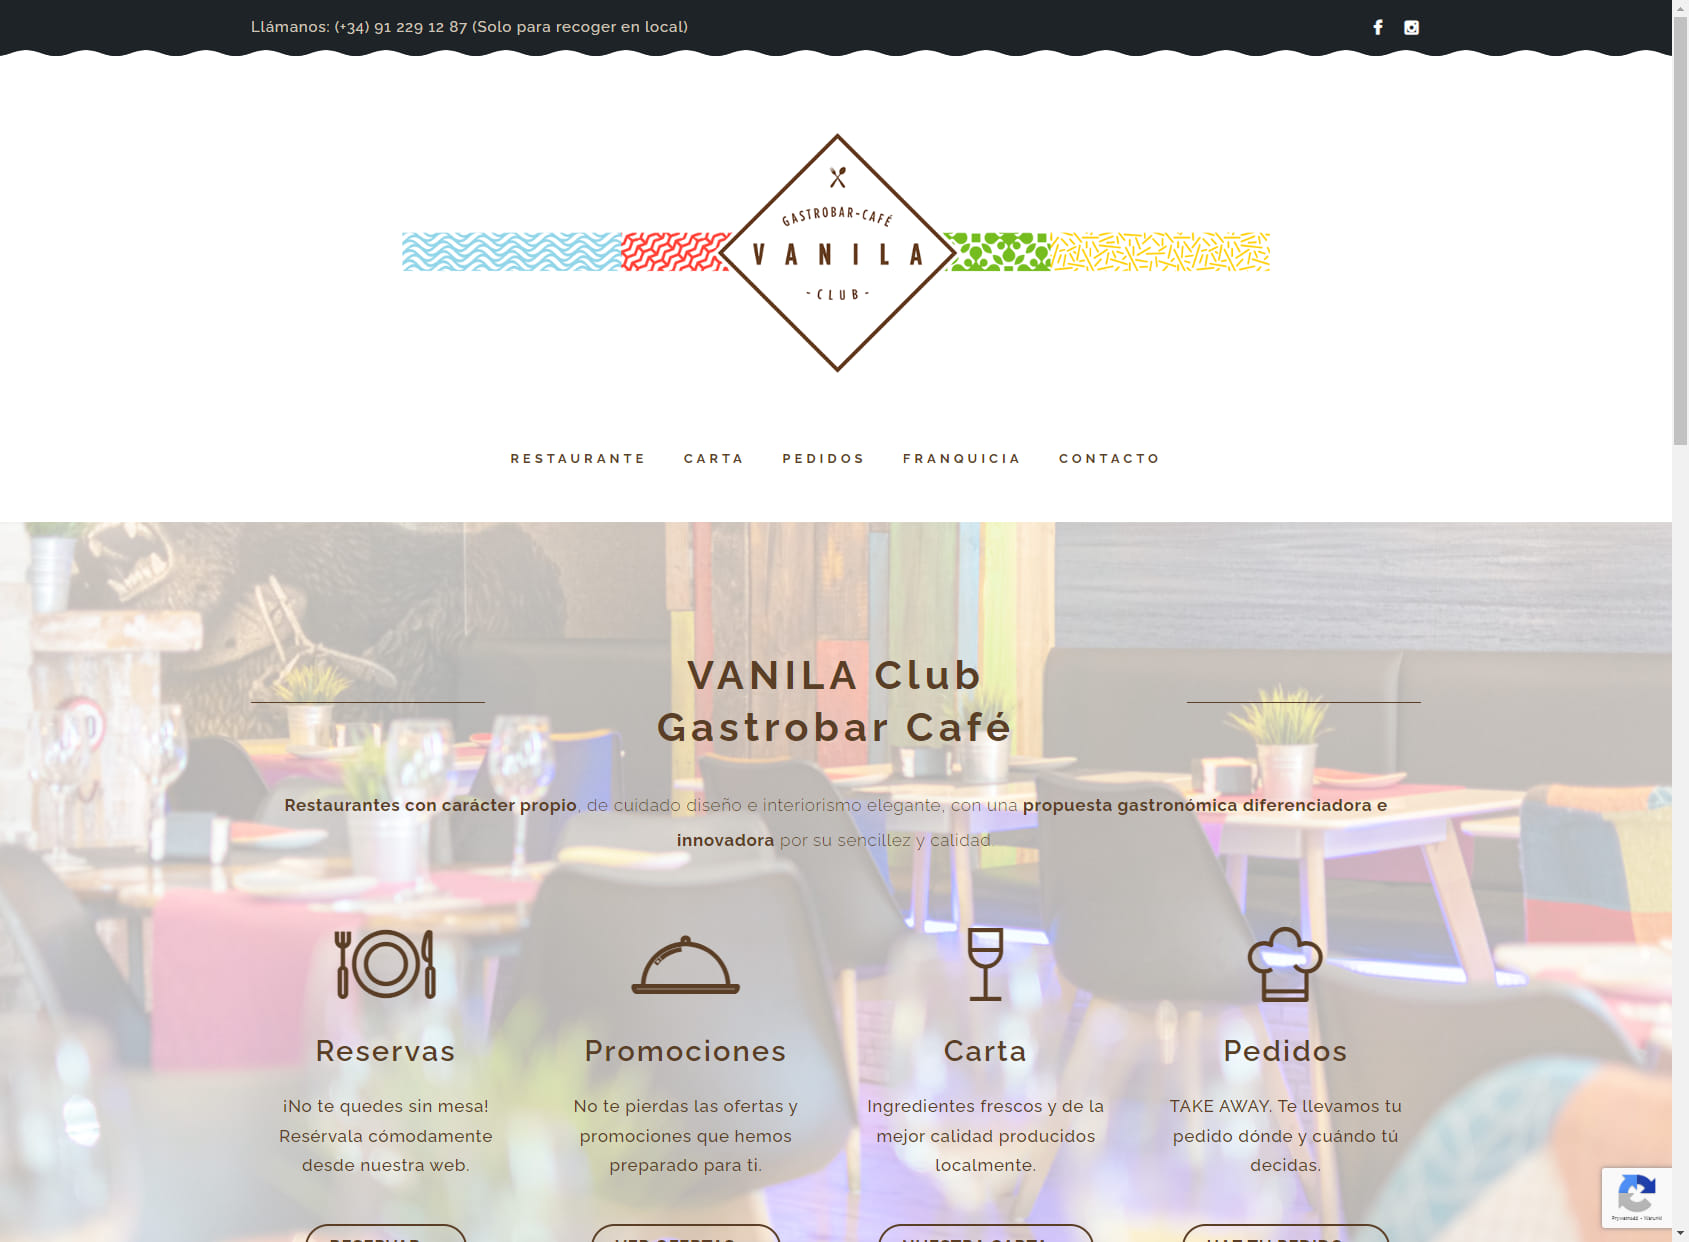 Vanila Club Gastrobar-Cafe